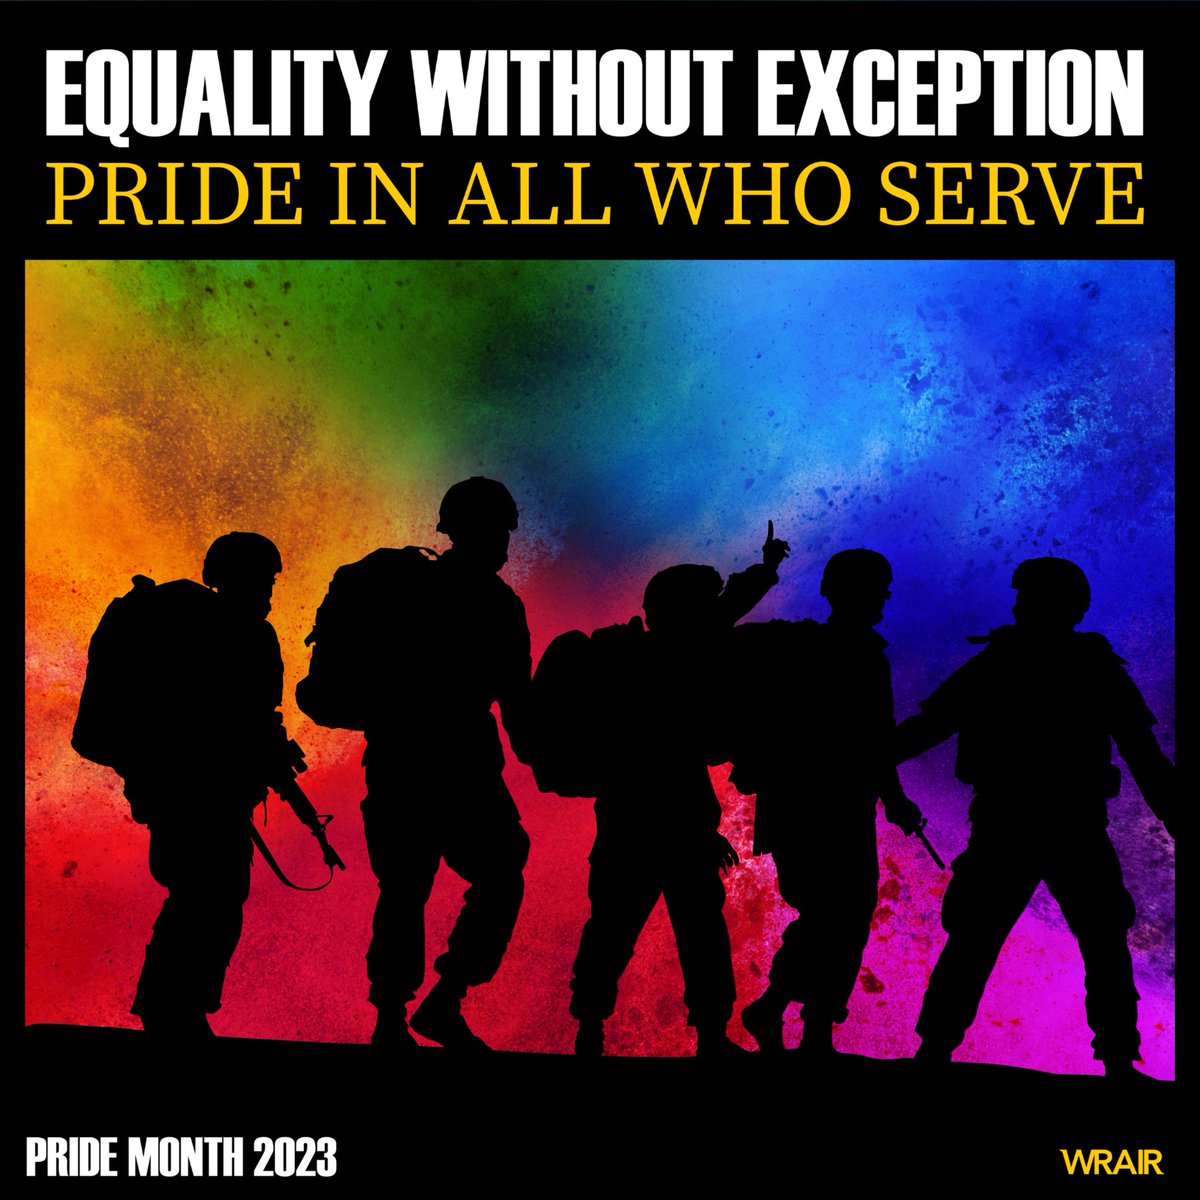 #ArmyPride #peoplefirst #pridemonth